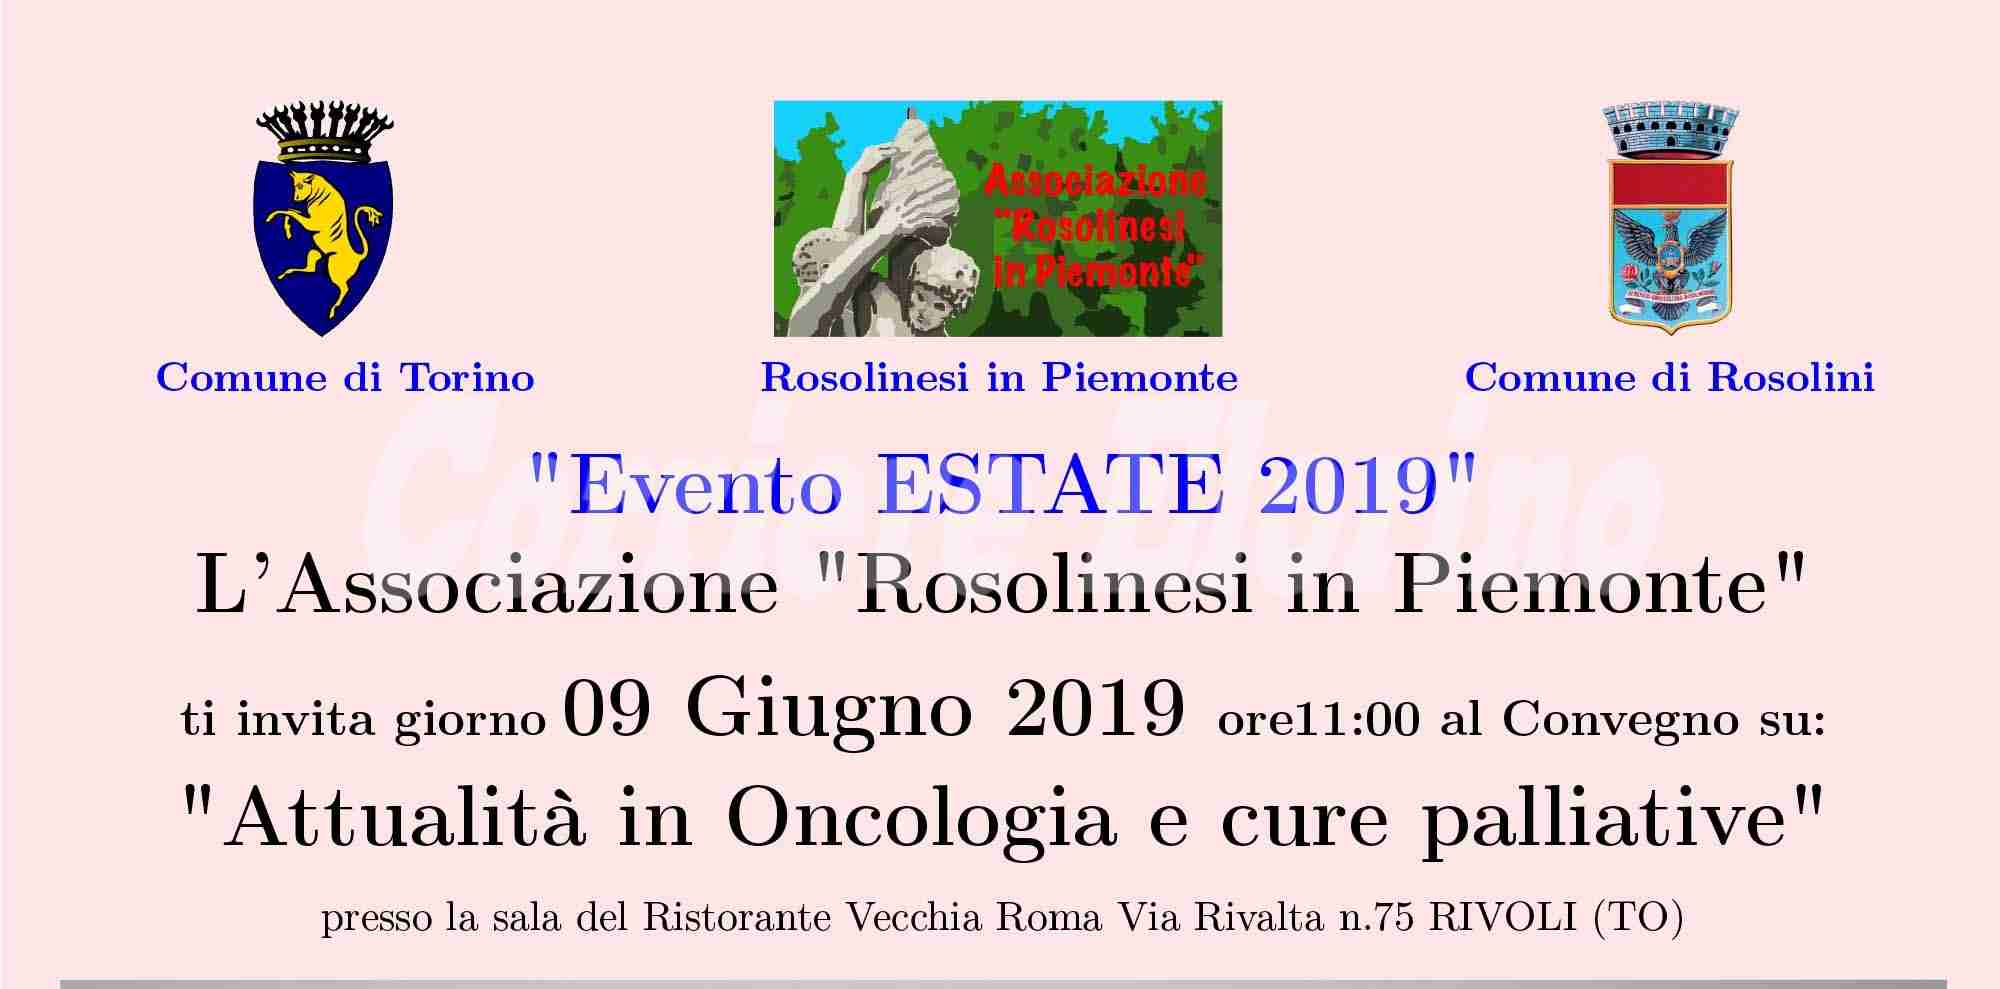 “Rosolinesi in Piemonte”, il 9 giugno un convegno su “Oncologia e cure palliative”